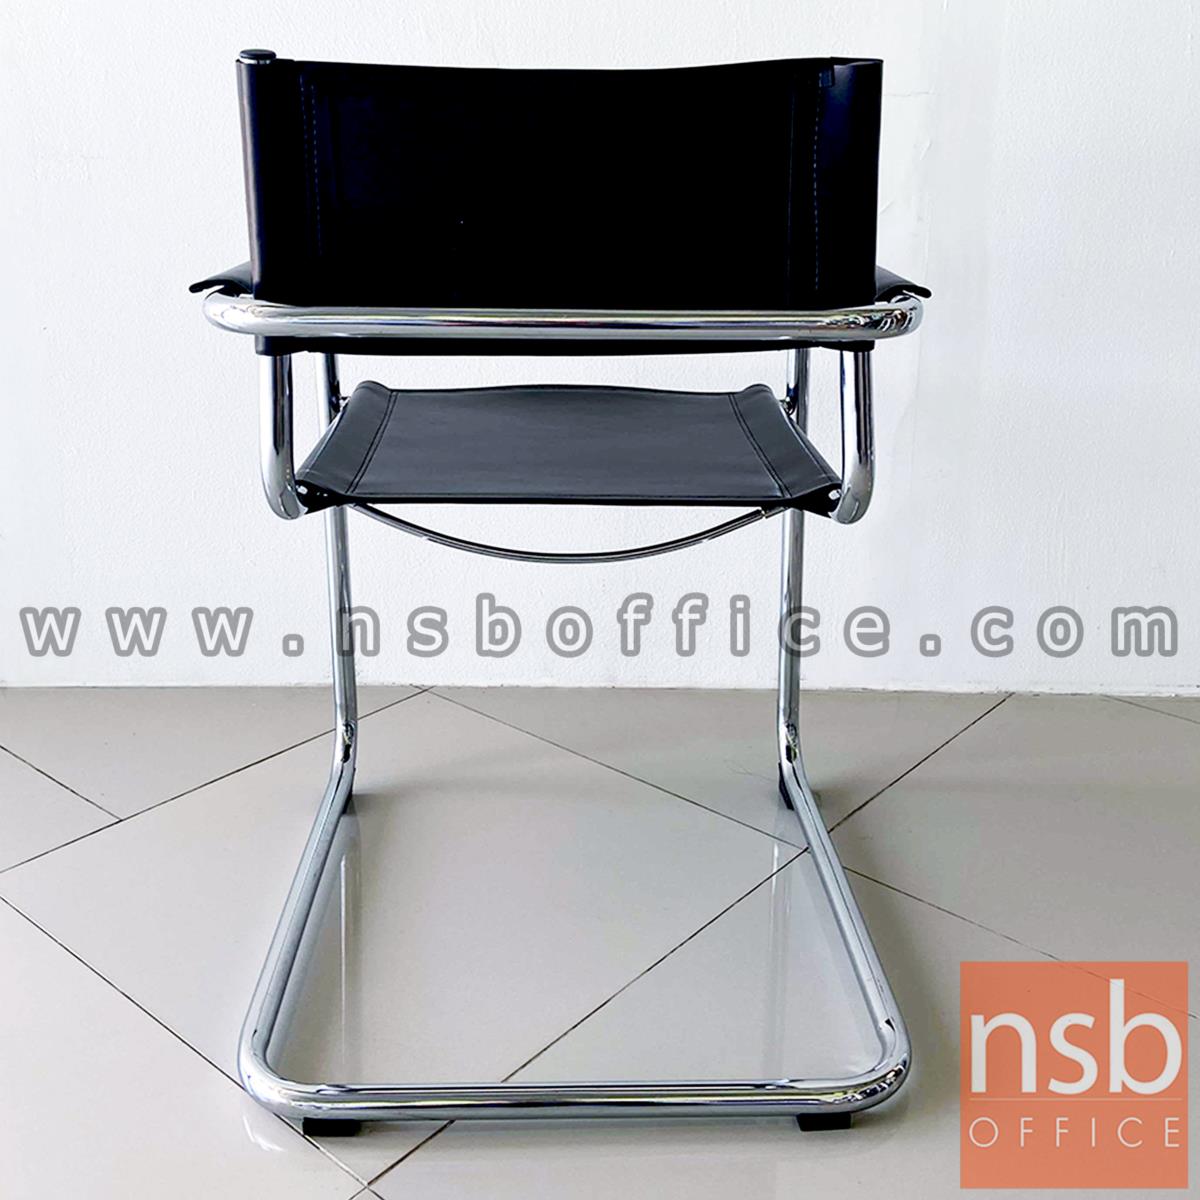 เก้าอี้อเนกประสงค์ รุ่น blackmagic (แบล็กเมจิก)  โครงเหล็กโครเมี่ยม